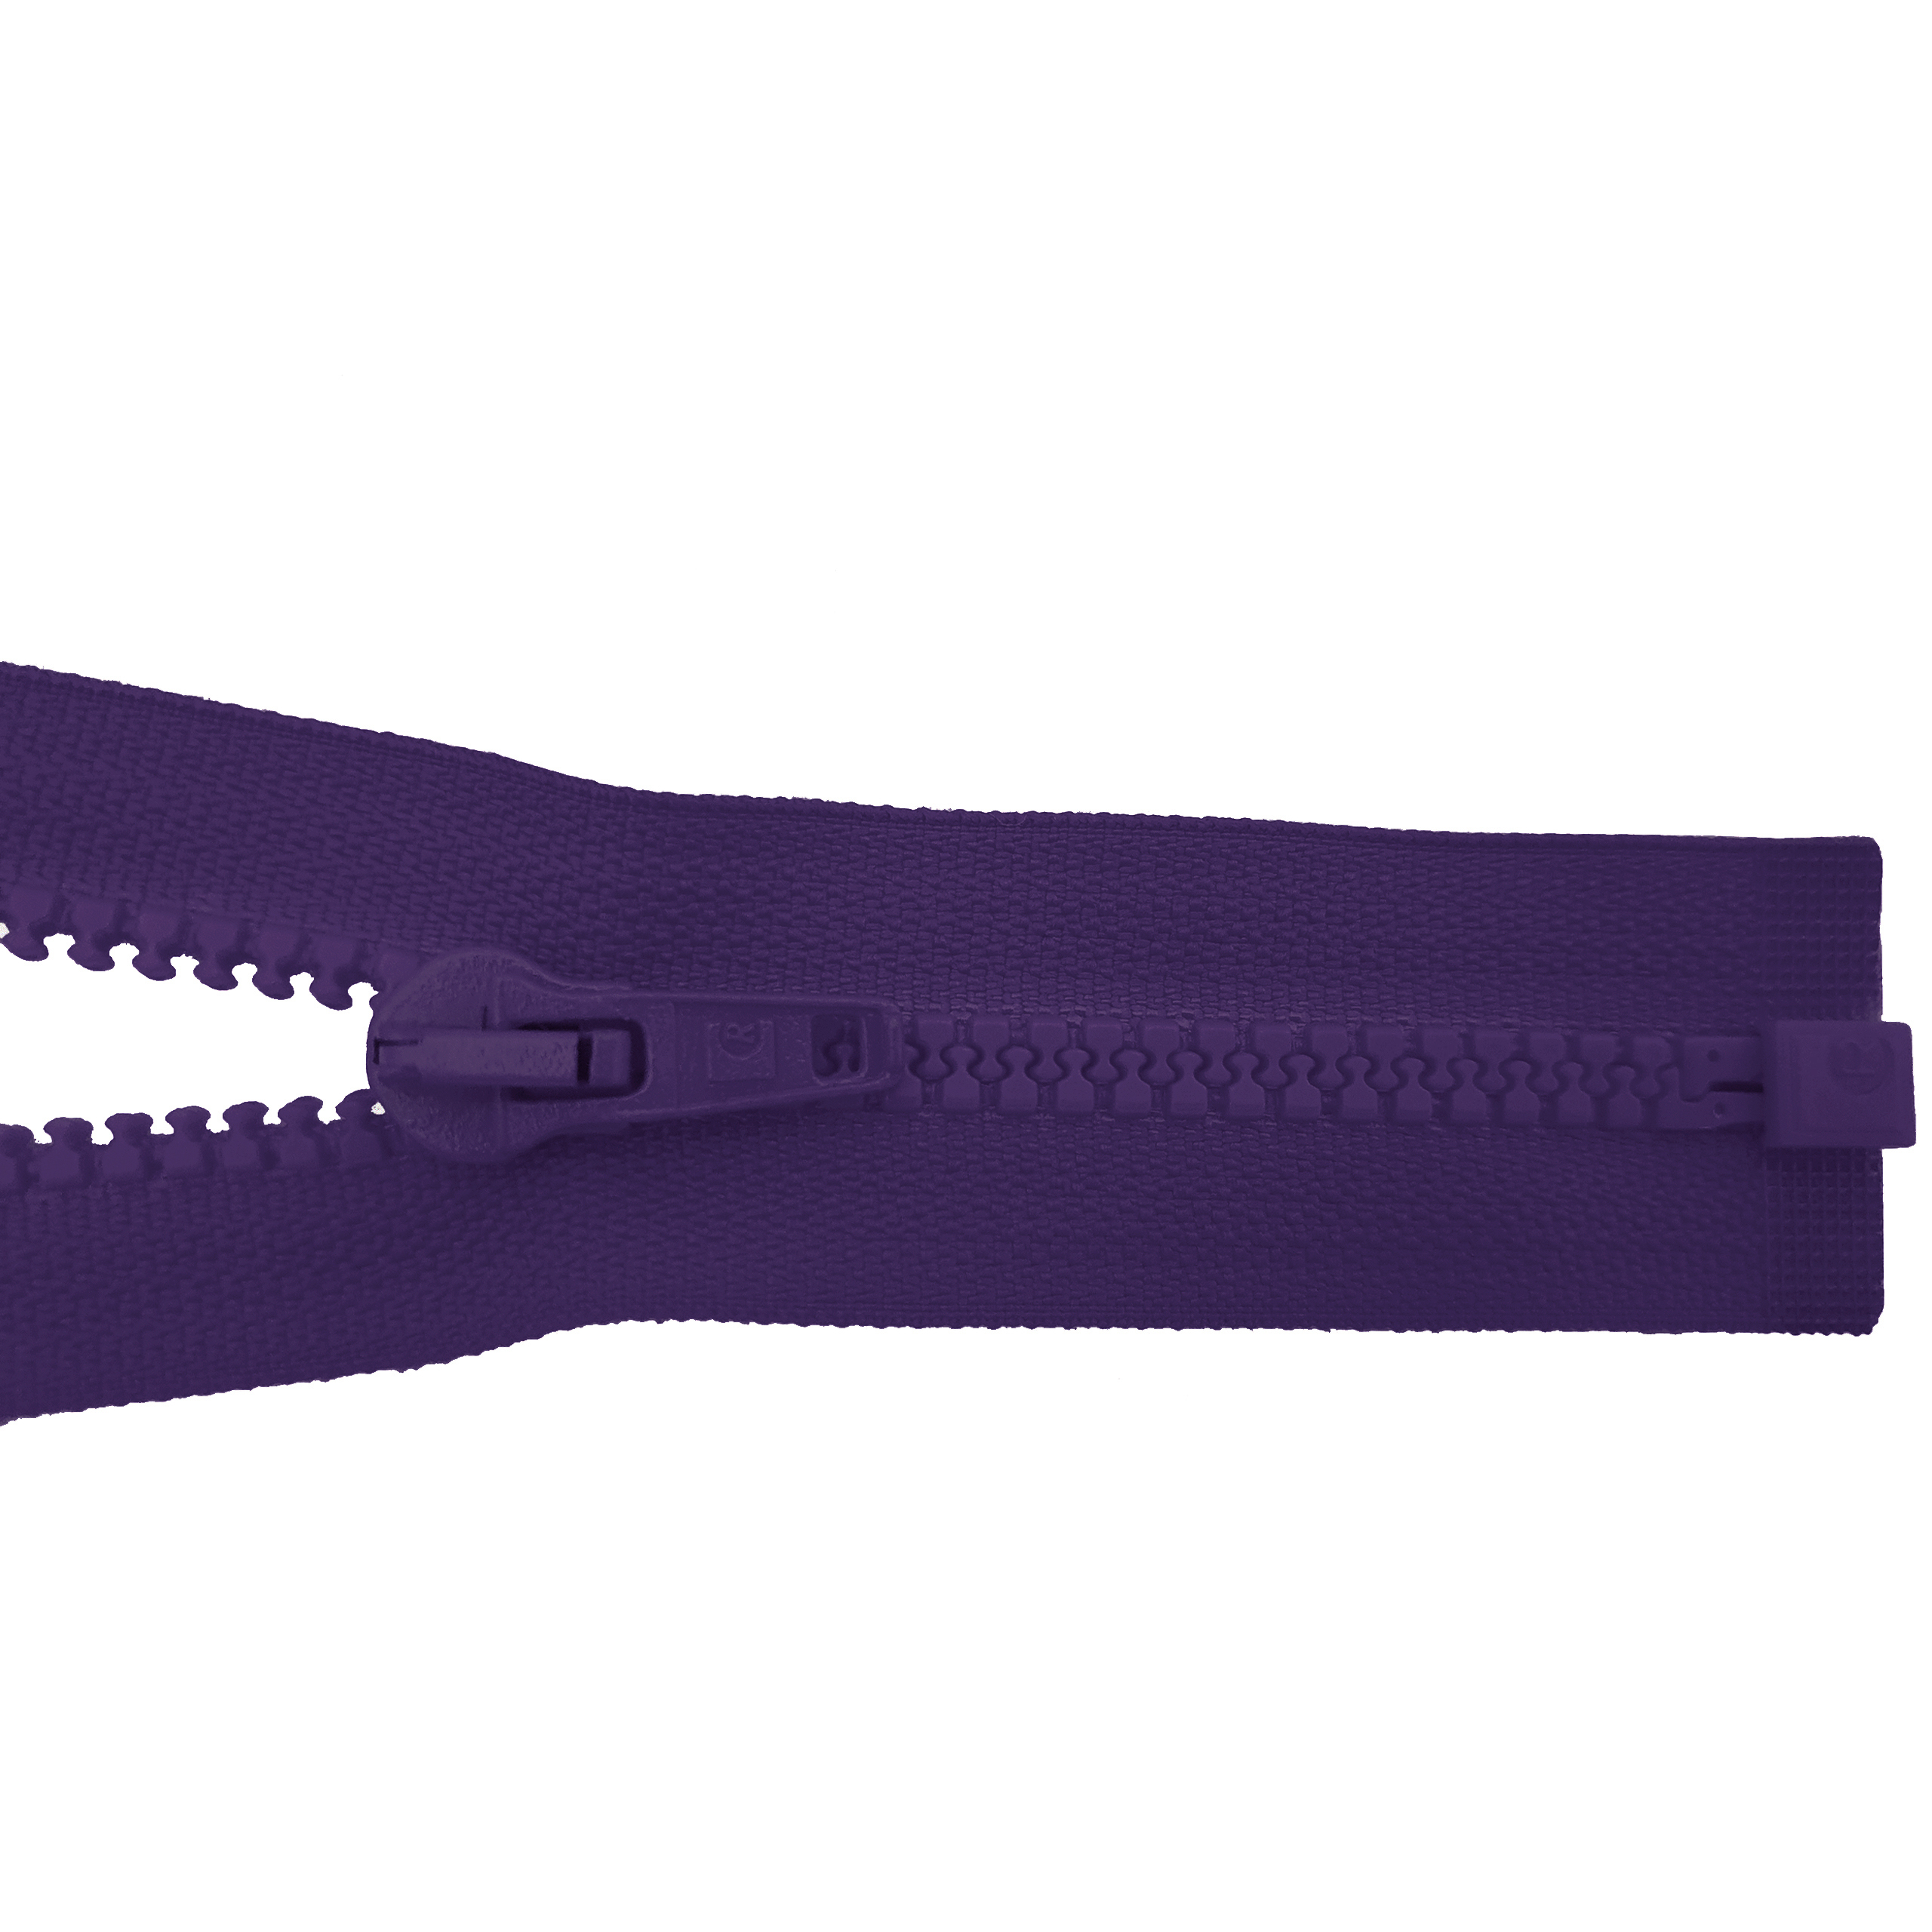 Reißverschluss 80cm, teilbar, Kstoff Zähne breit, violett, hochwertiger Marken-Reißverschluss von Rubi/Barcelona